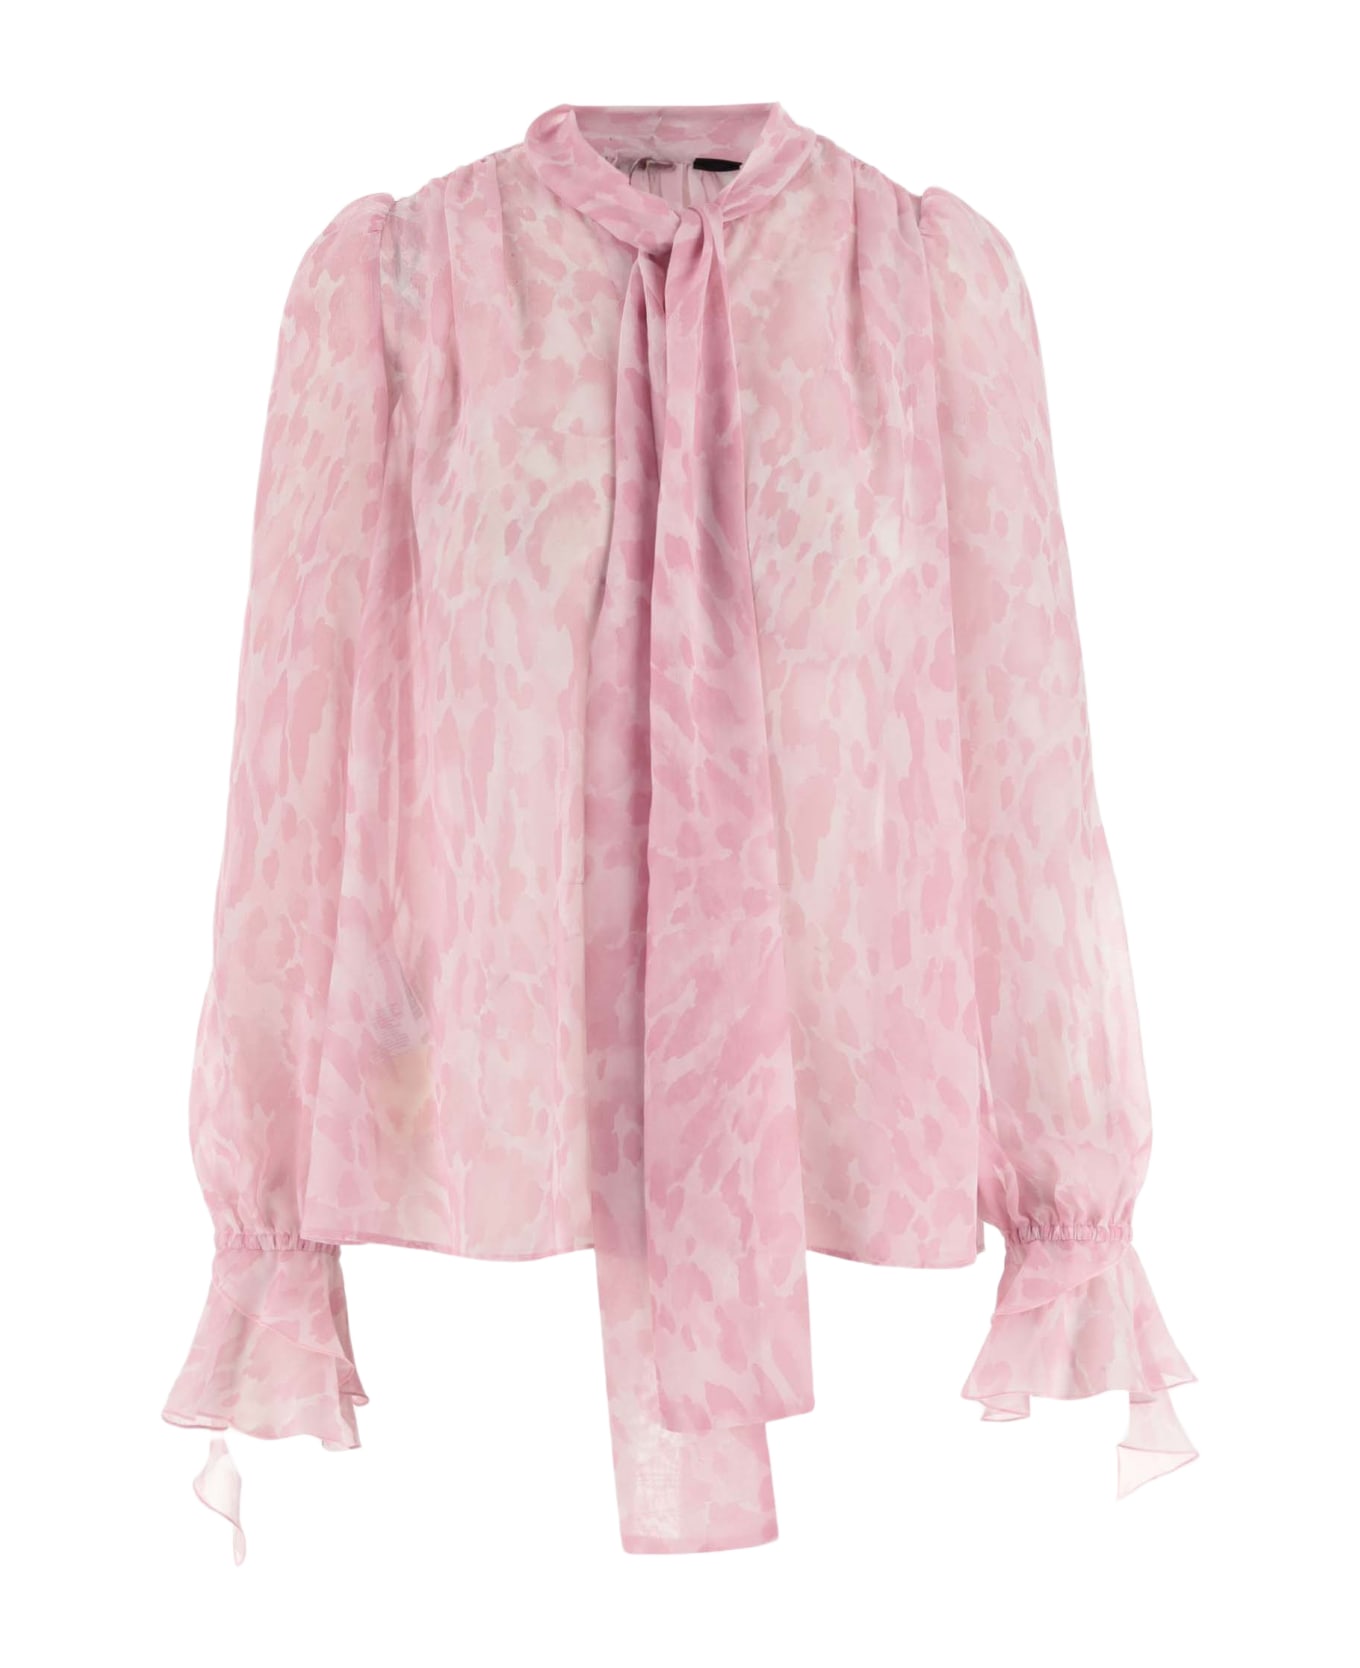 Pinko Printed Chiffon Shirt - Multi Pink ブラウス